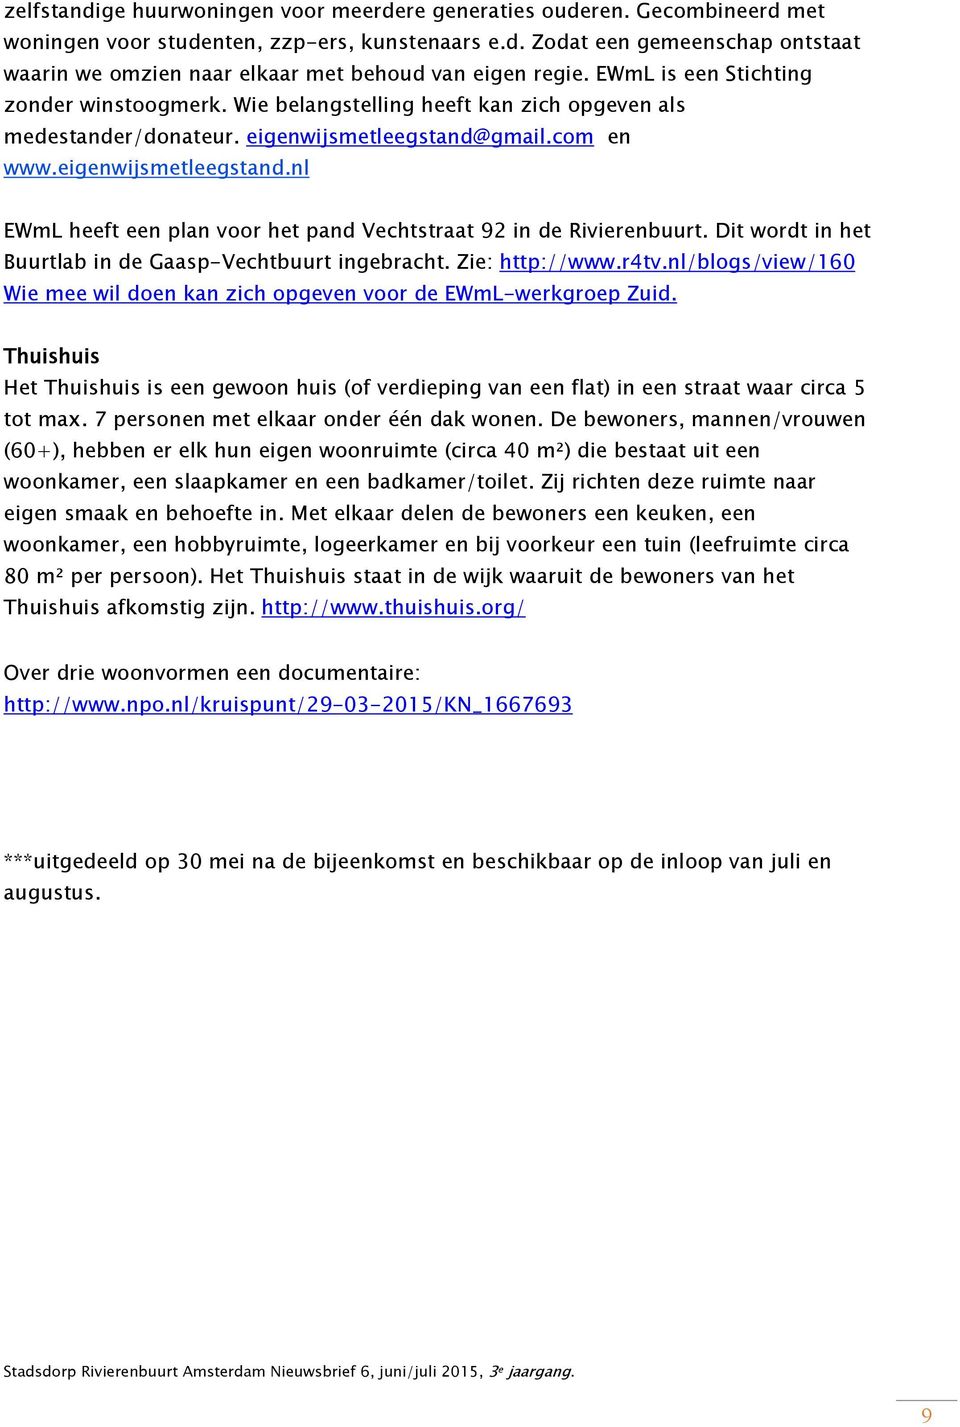 gmail.com en www.eigenwijsmetleegstand.nl EWmL heeft een plan voor het pand Vechtstraat 92 in de Rivierenbuurt. Dit wordt in het Buurtlab in de Gaasp-Vechtbuurt ingebracht. Zie: http://www.r4tv.